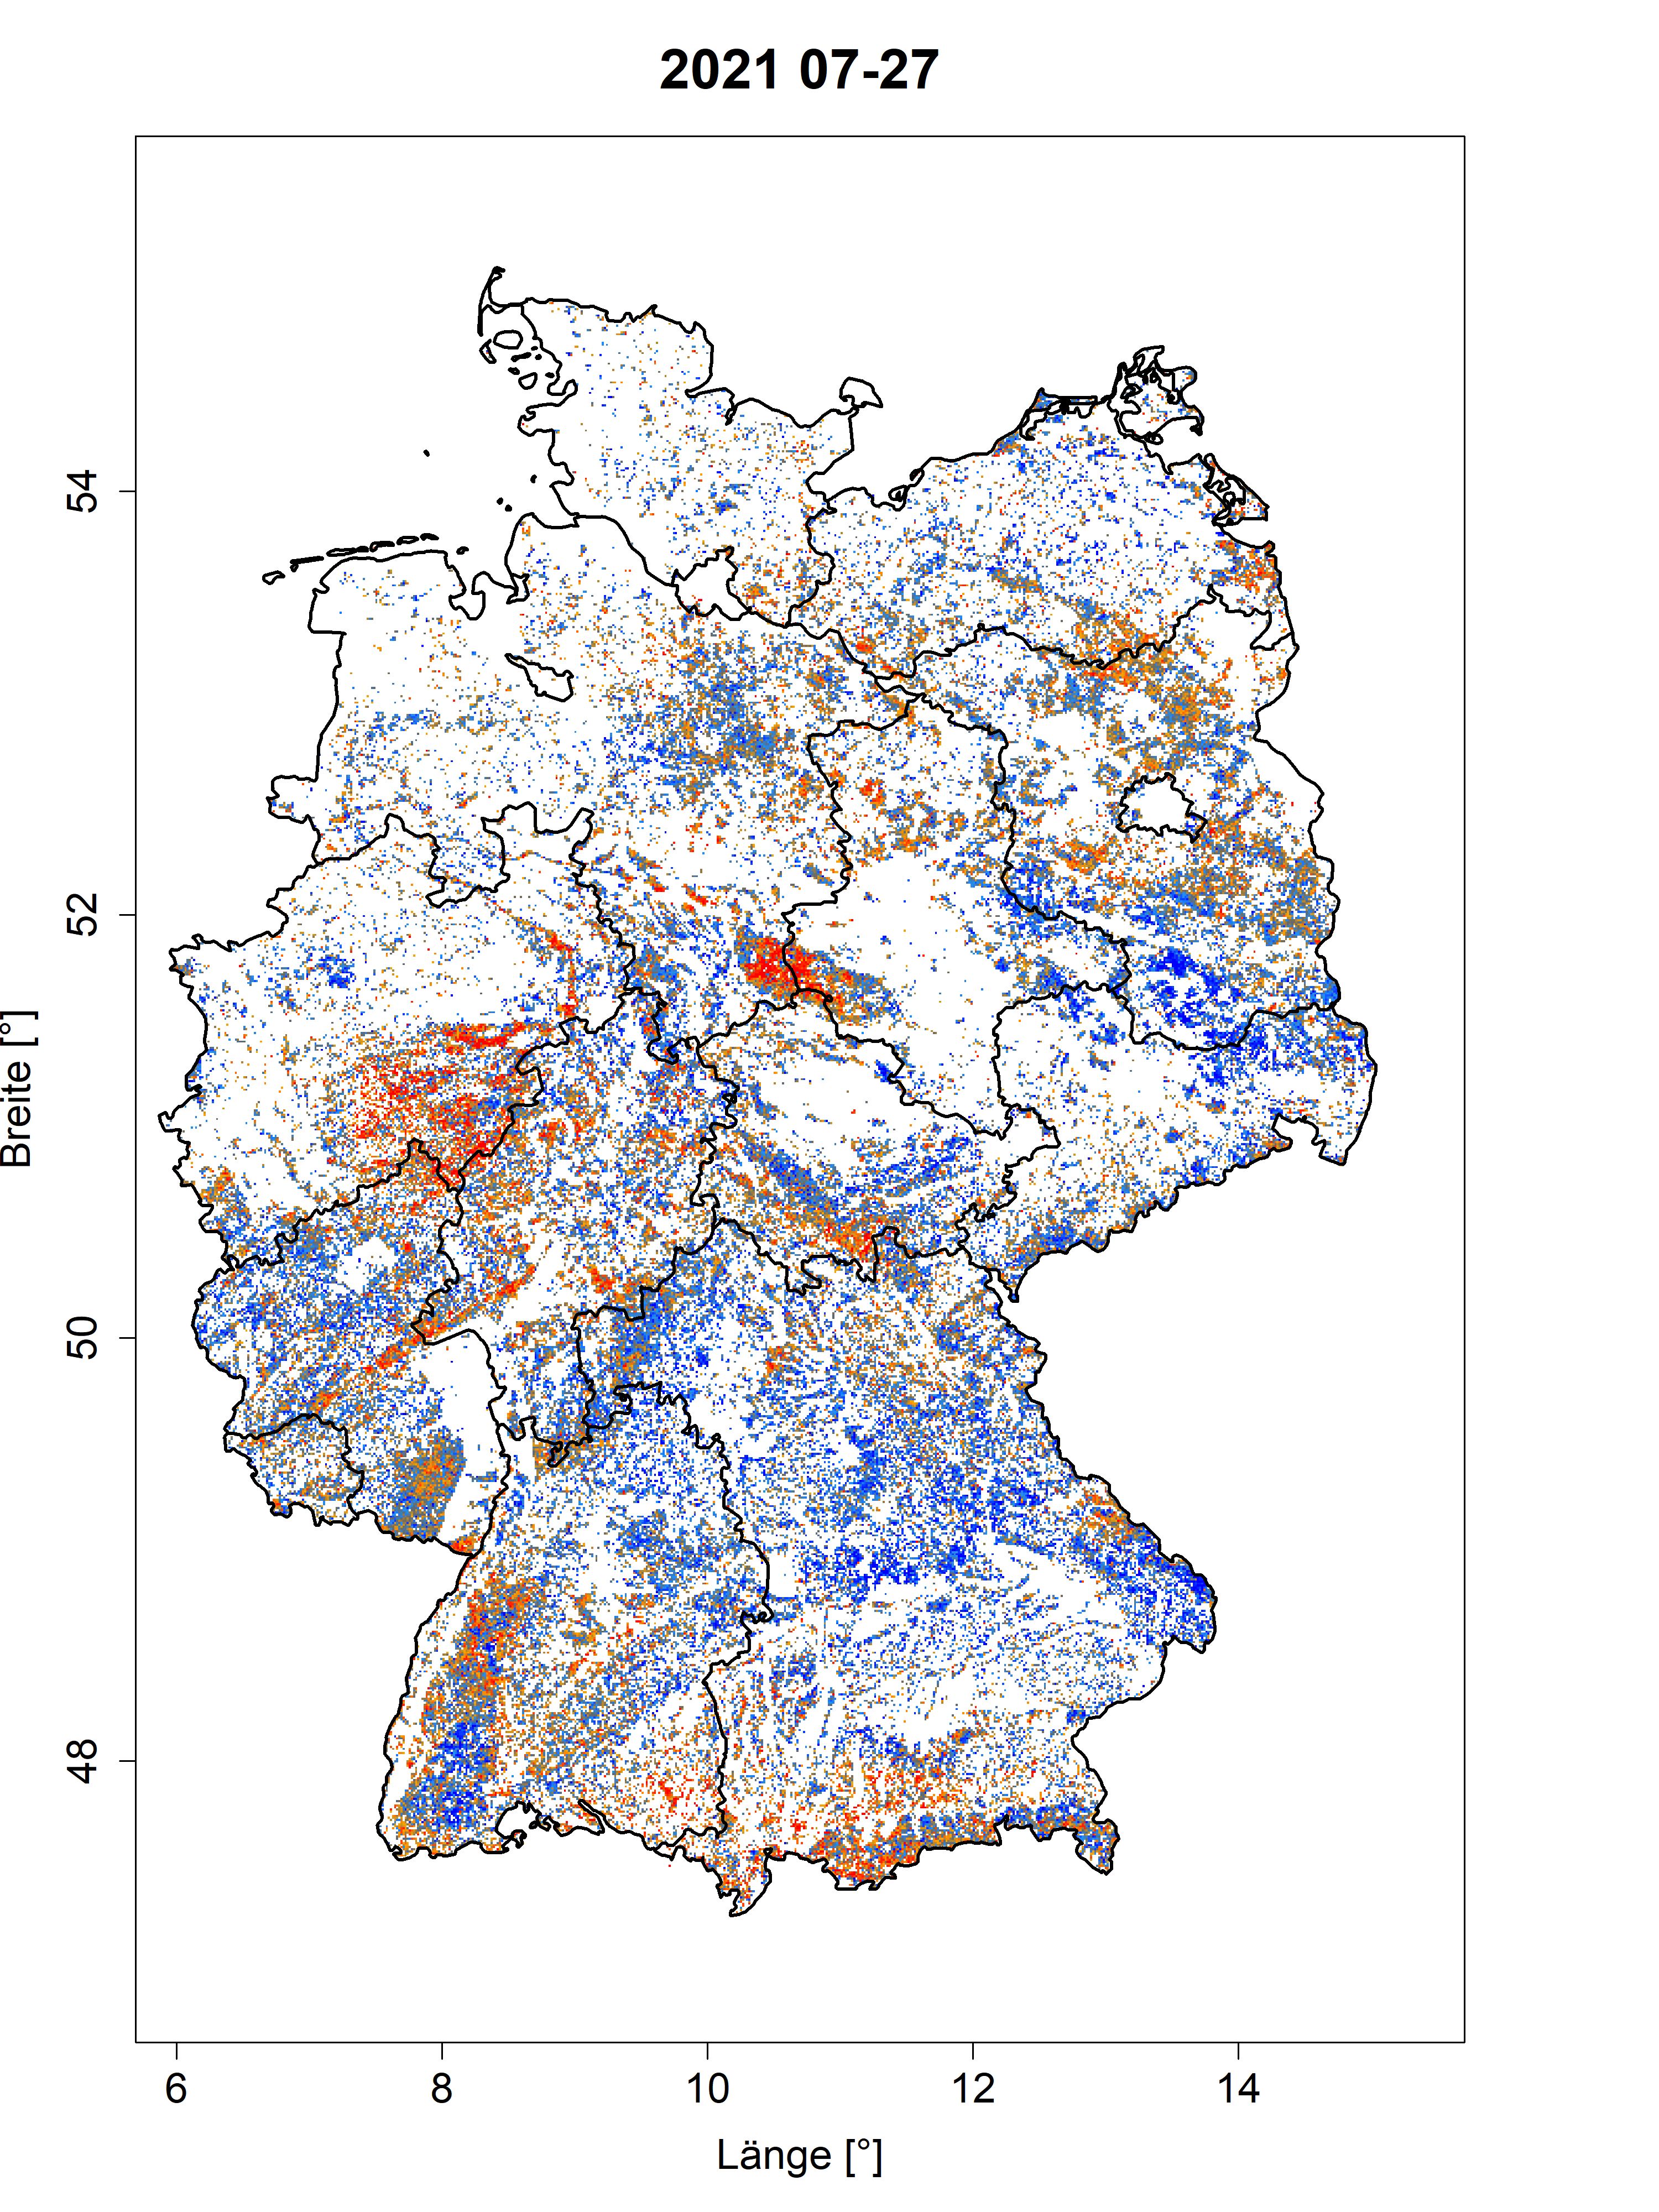 Waldzustandsmonitor, Juli 2021: Rote Punkte im Waldzustandsmonitor zeigen eine niedrige, blaue Punkte eine hohe Vitalität der Bäume. 